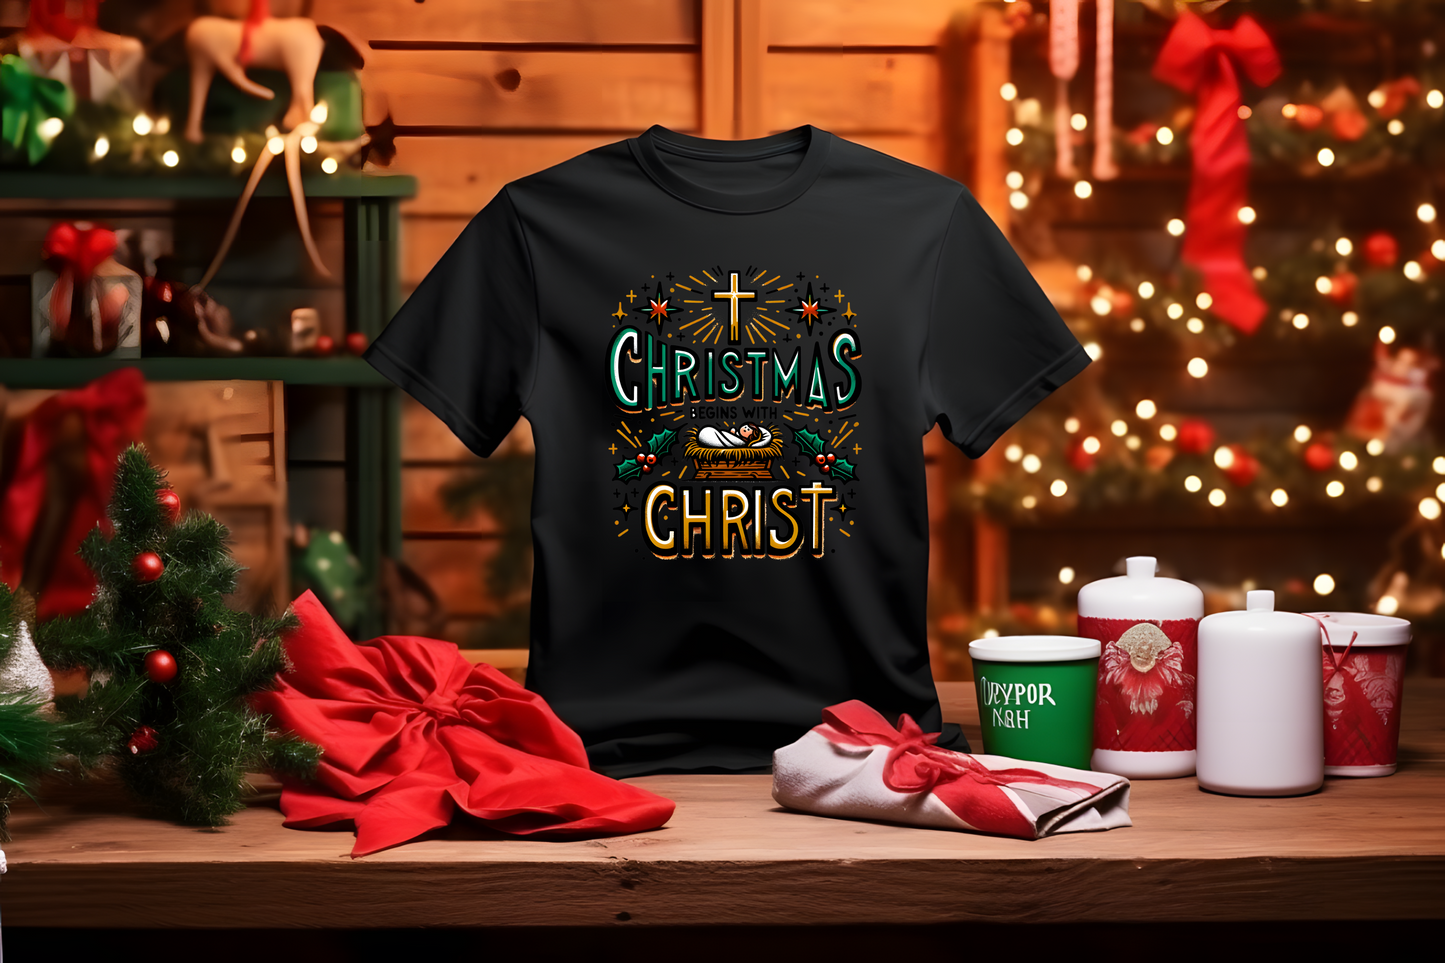 Christmas Begins With Christ Christmas T-Shirt